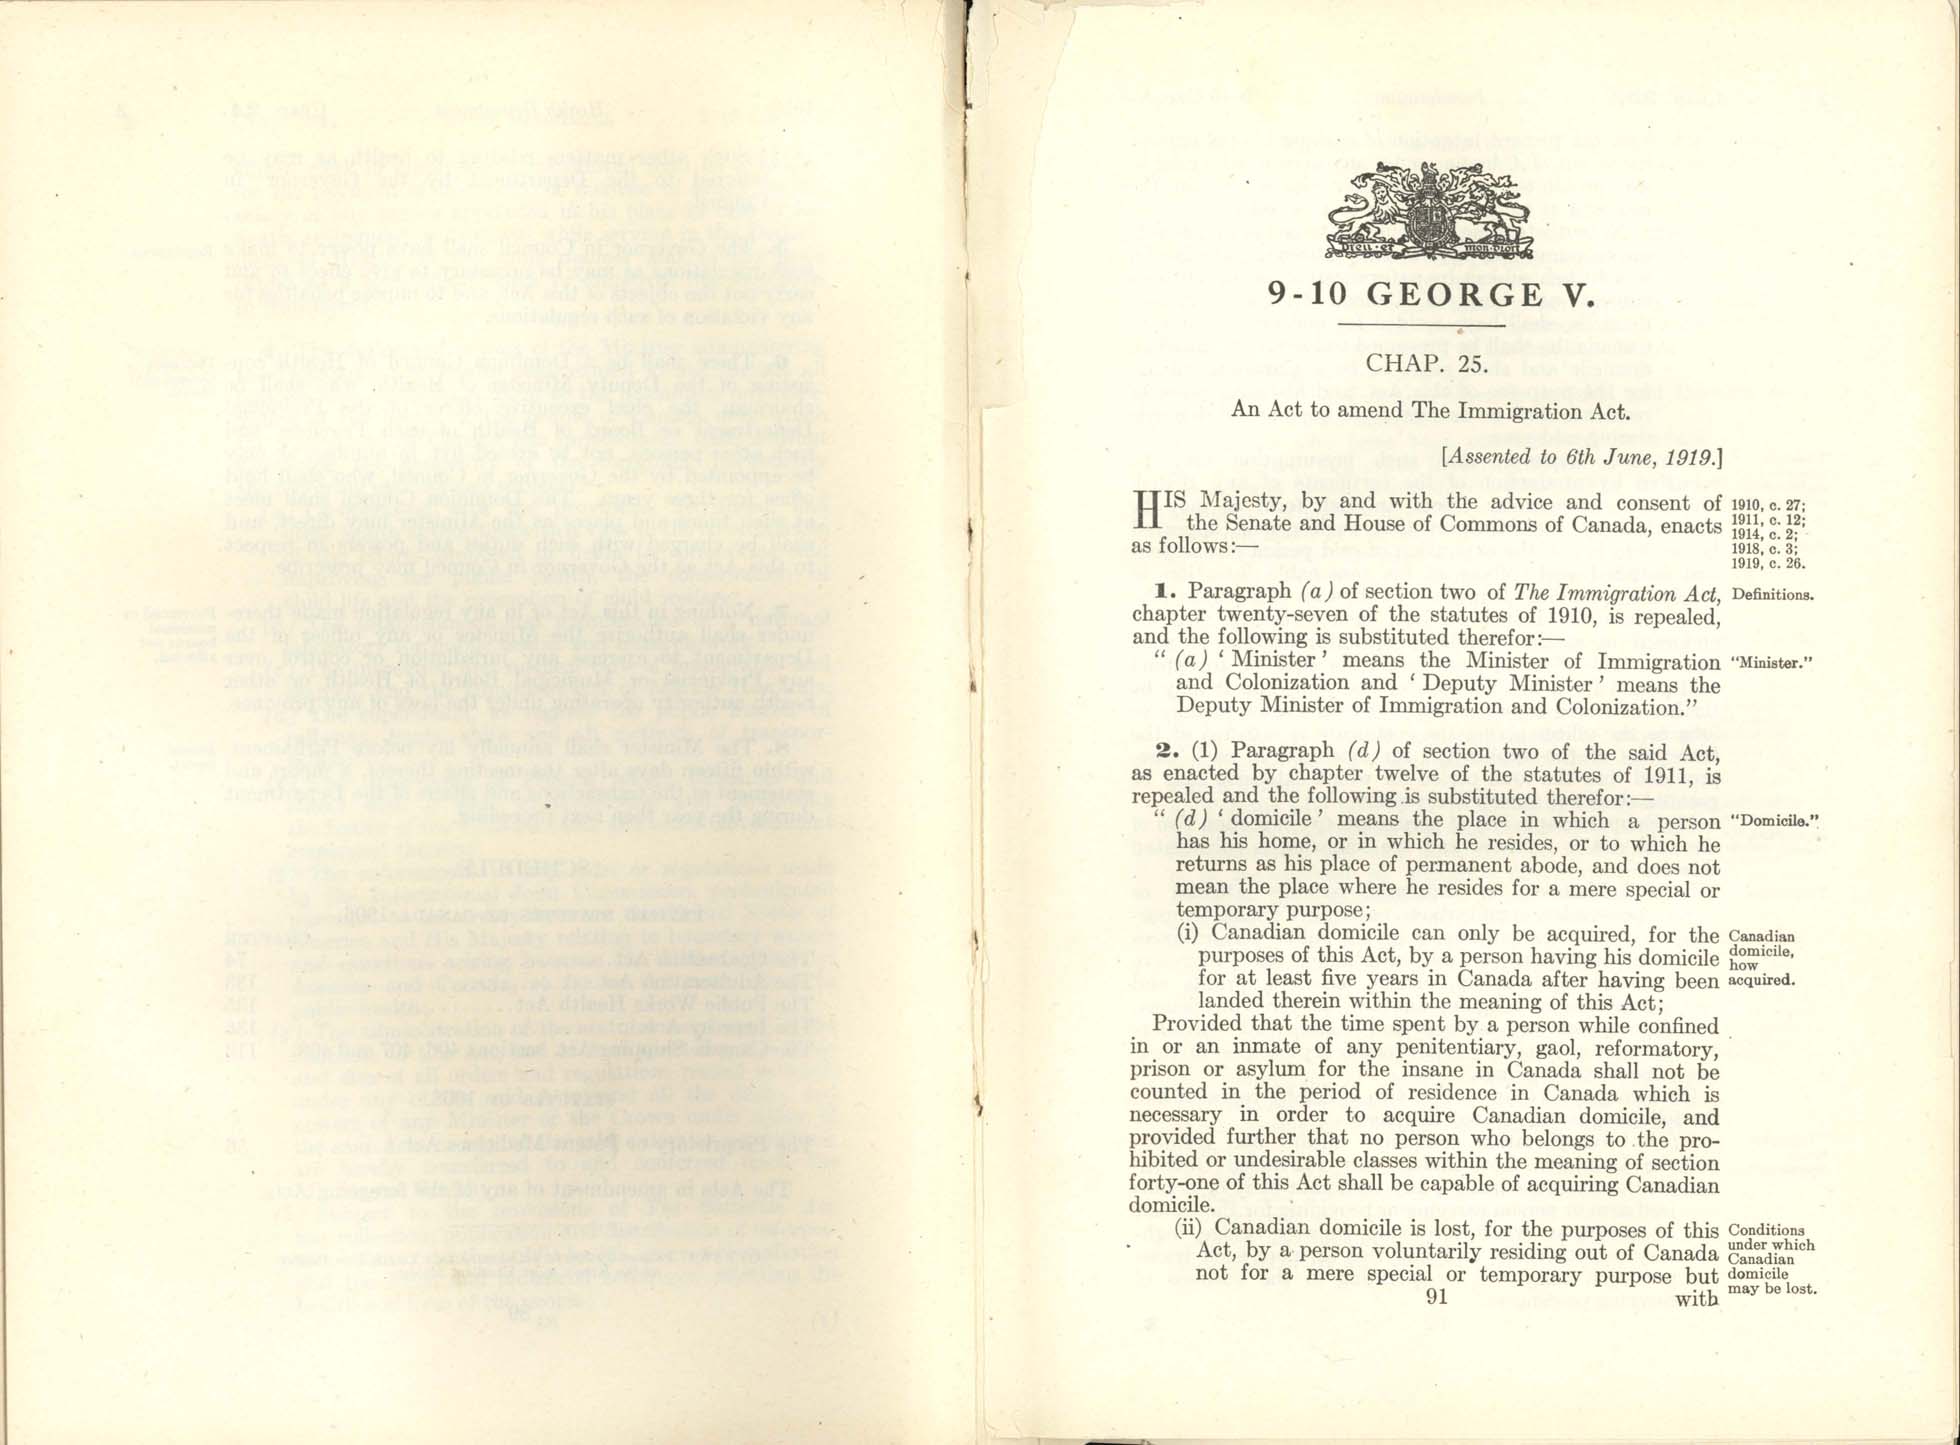 Chap. 25 Page 91 Immigration Act Amendment, 1919